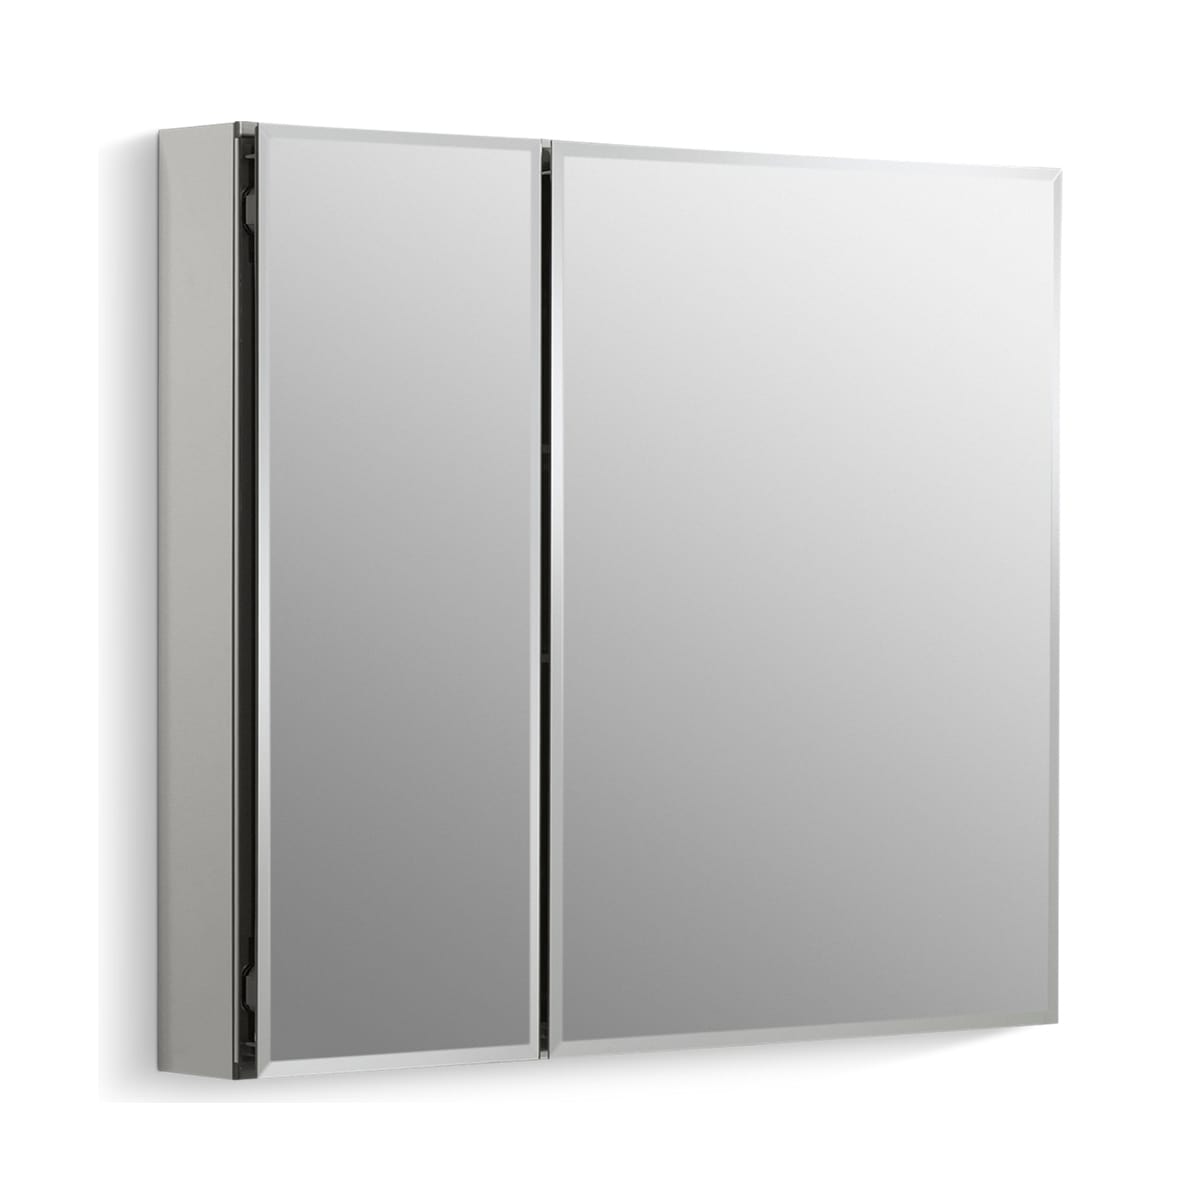 Kohler K Cb Clc3026fs Silver Aluminum 30 X 26 Double Door